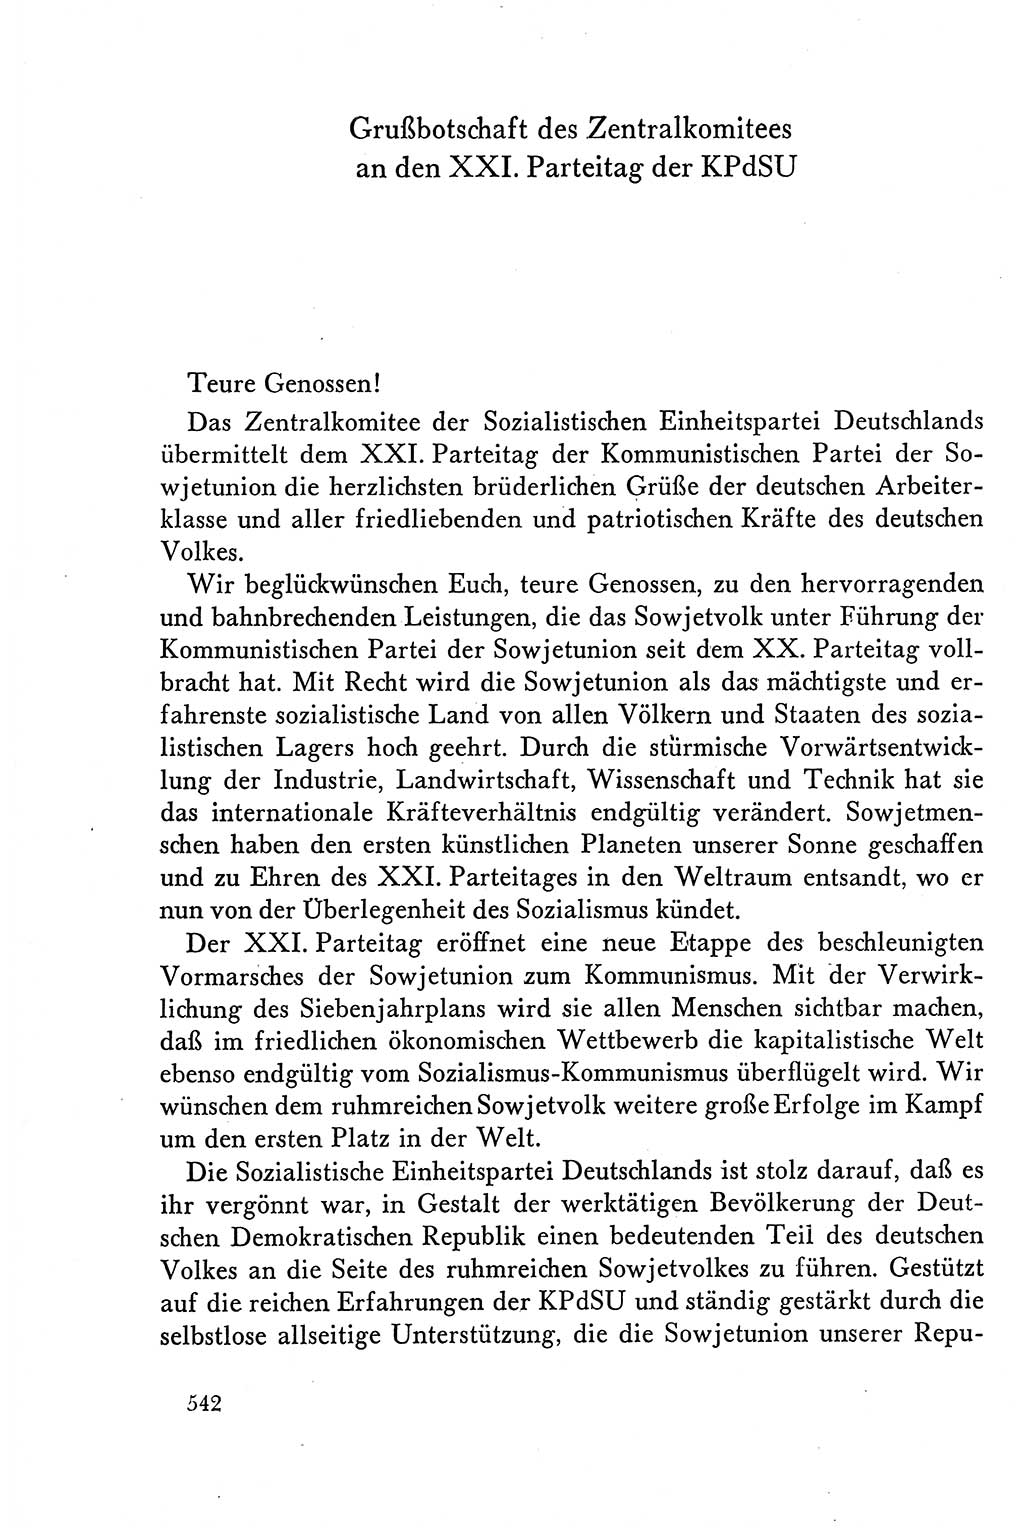 Dokumente der Sozialistischen Einheitspartei Deutschlands (SED) [Deutsche Demokratische Republik (DDR)] 1958-1959, Seite 542 (Dok. SED DDR 1958-1959, S. 542)